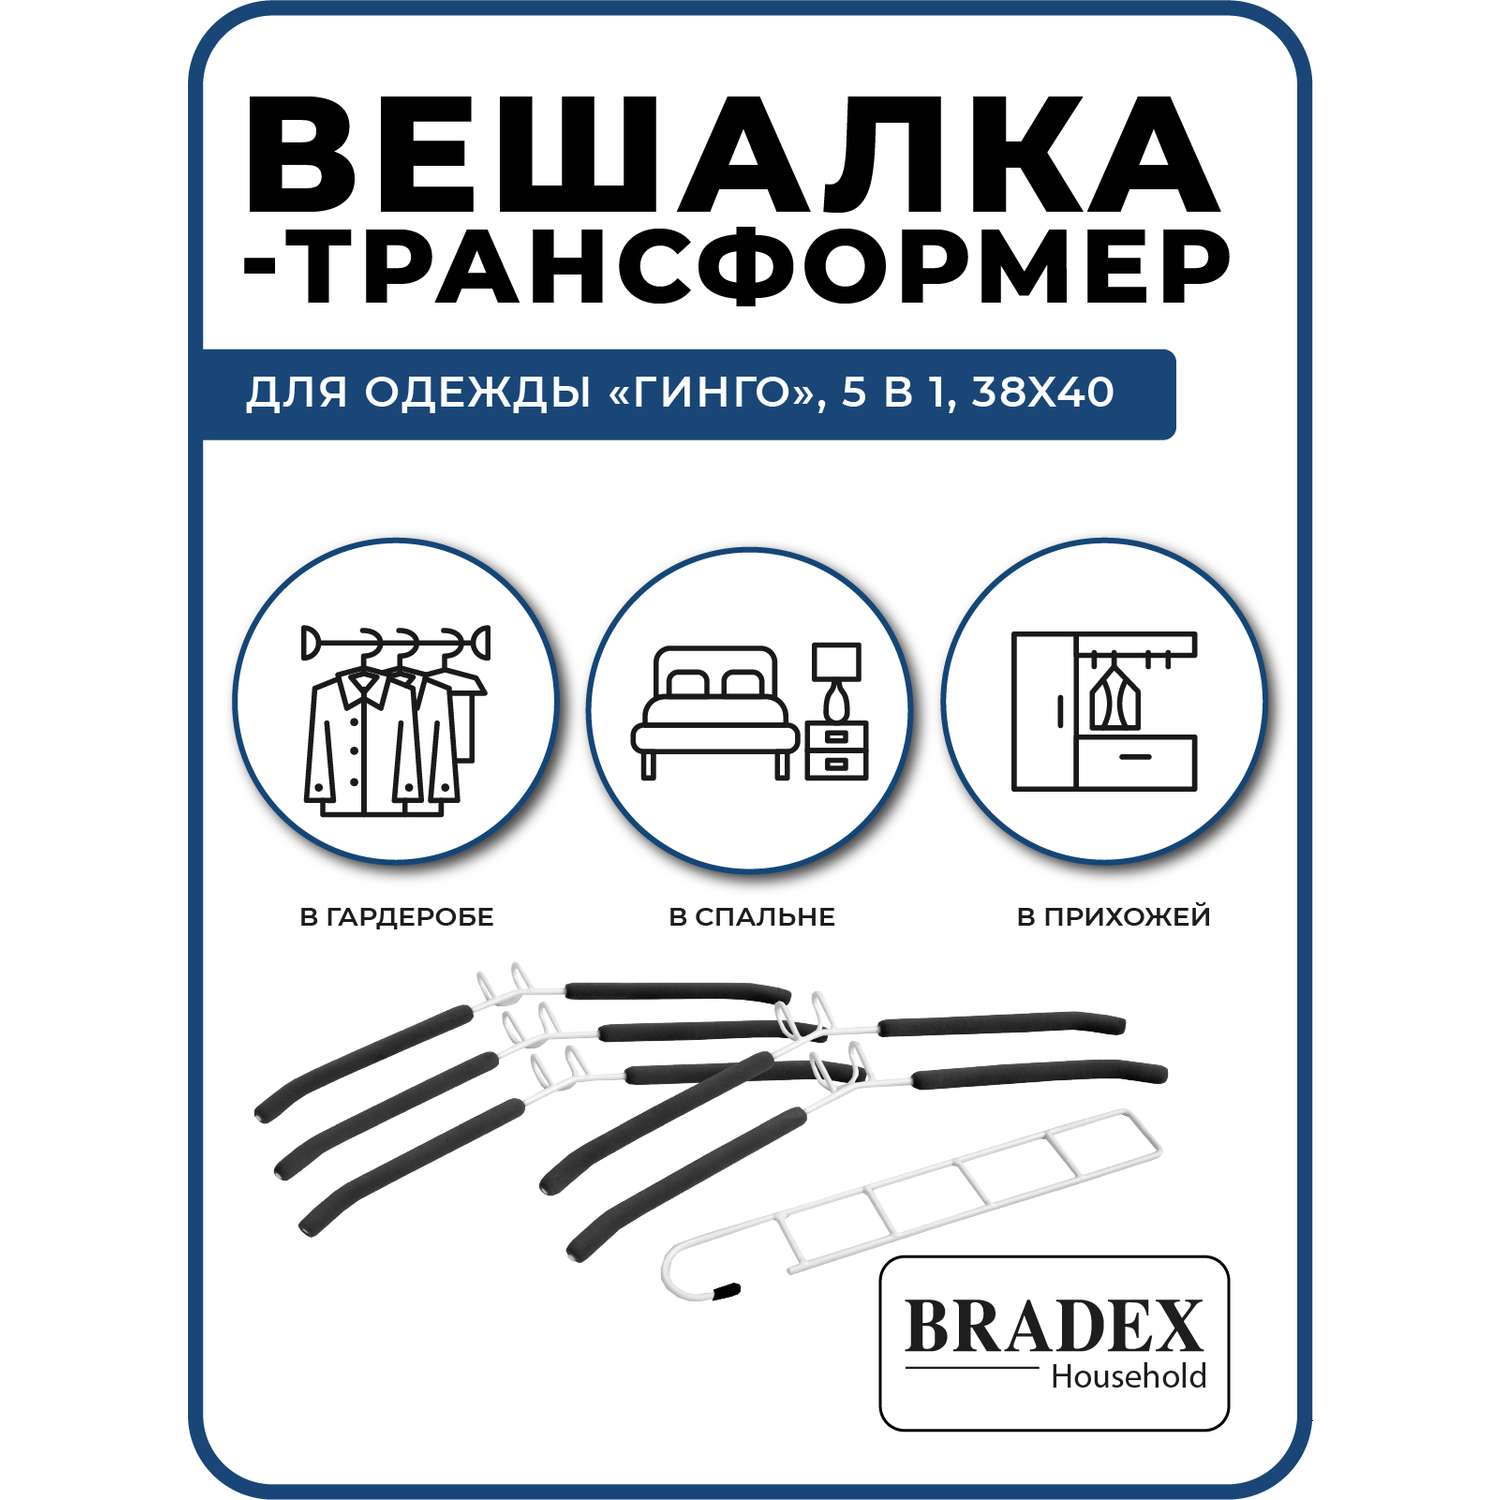 Вешалка Bradex трансформер для одежды 5 в 1 - фото 3